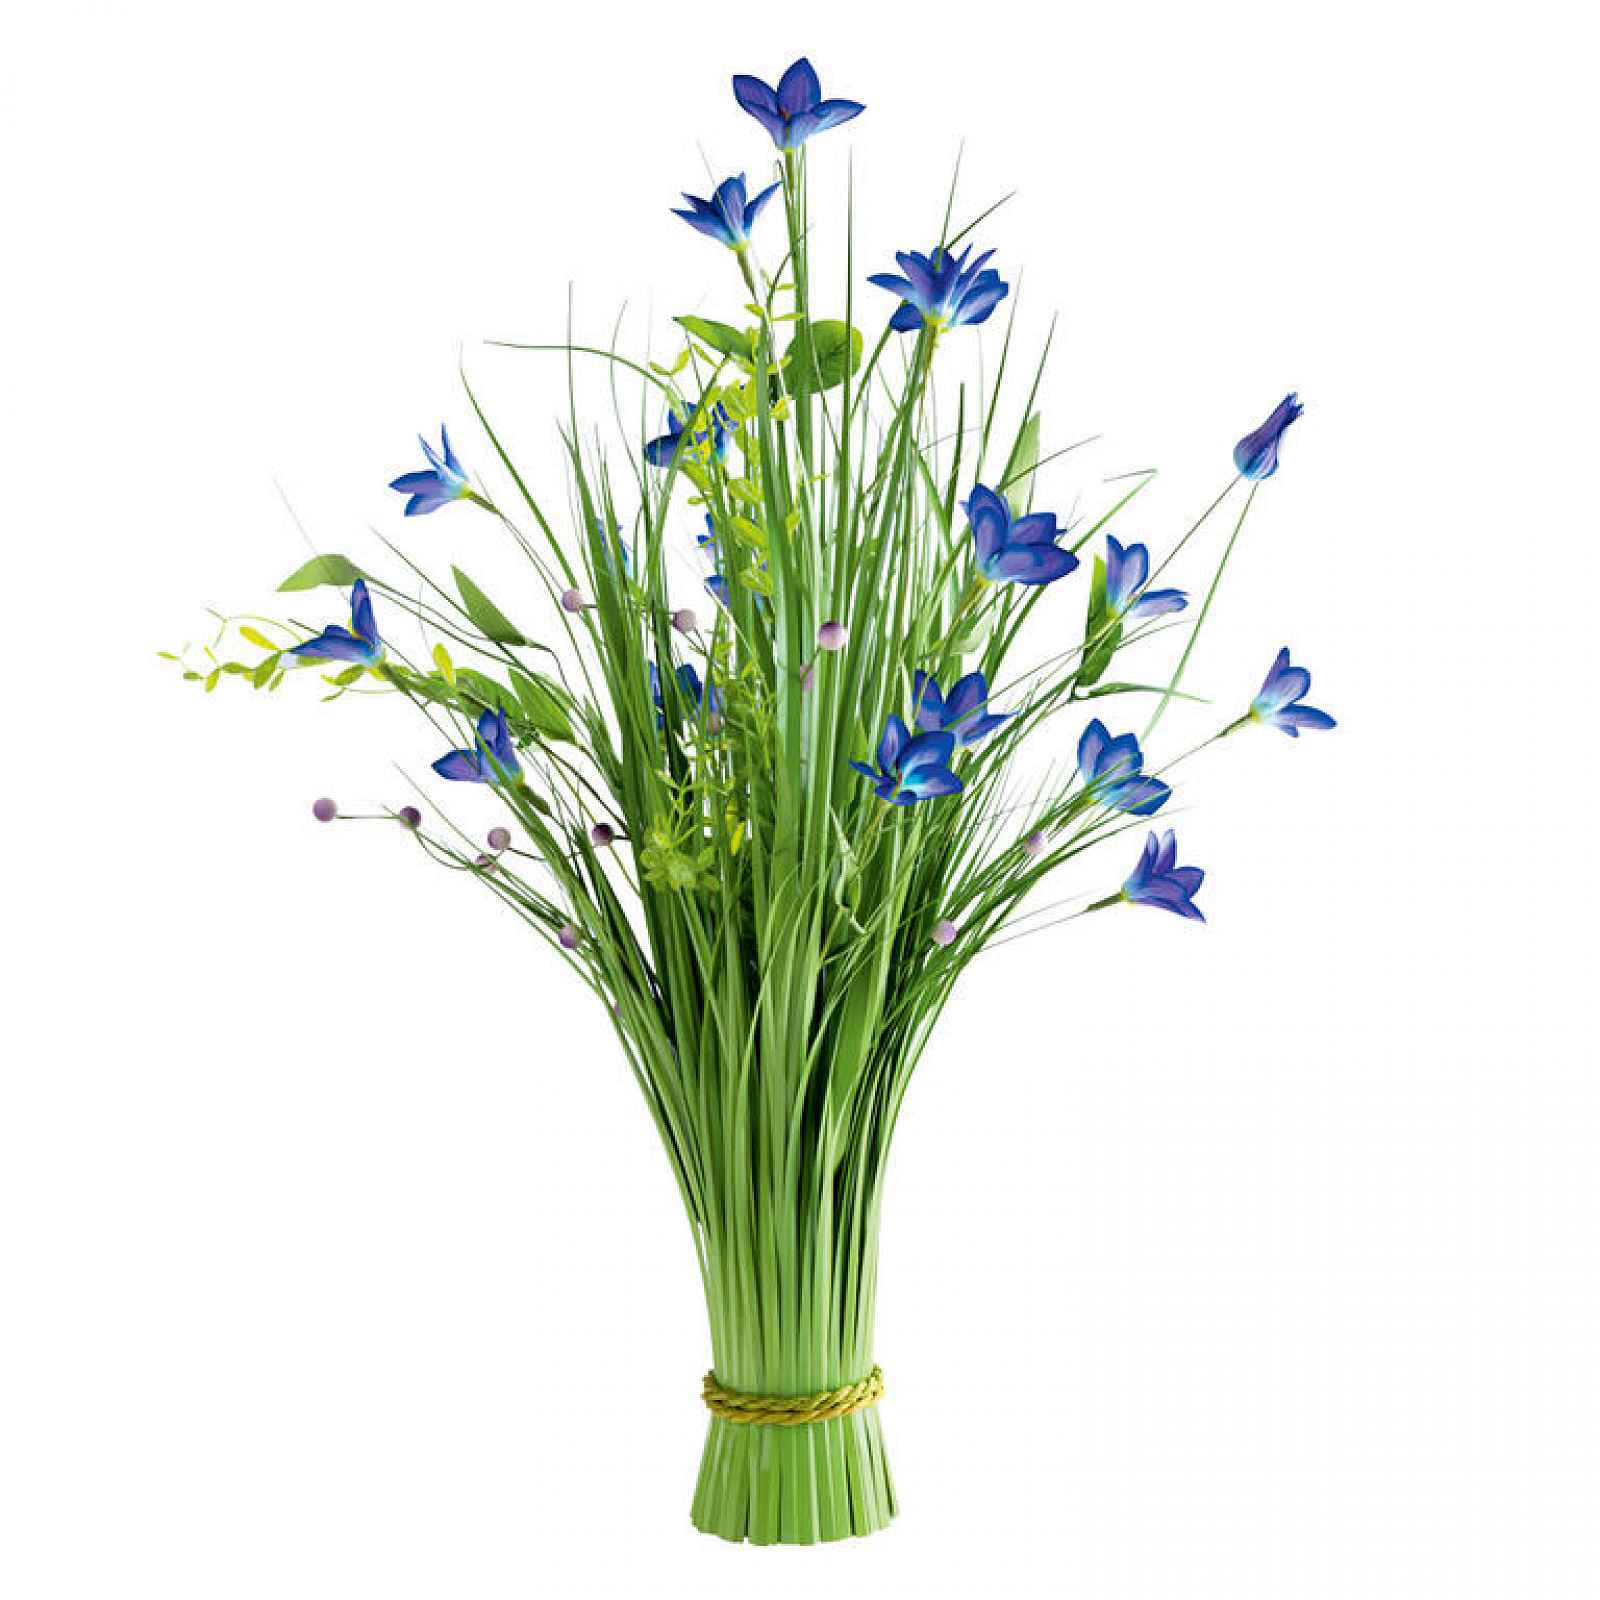 Okrasná tráva svazek modré květy